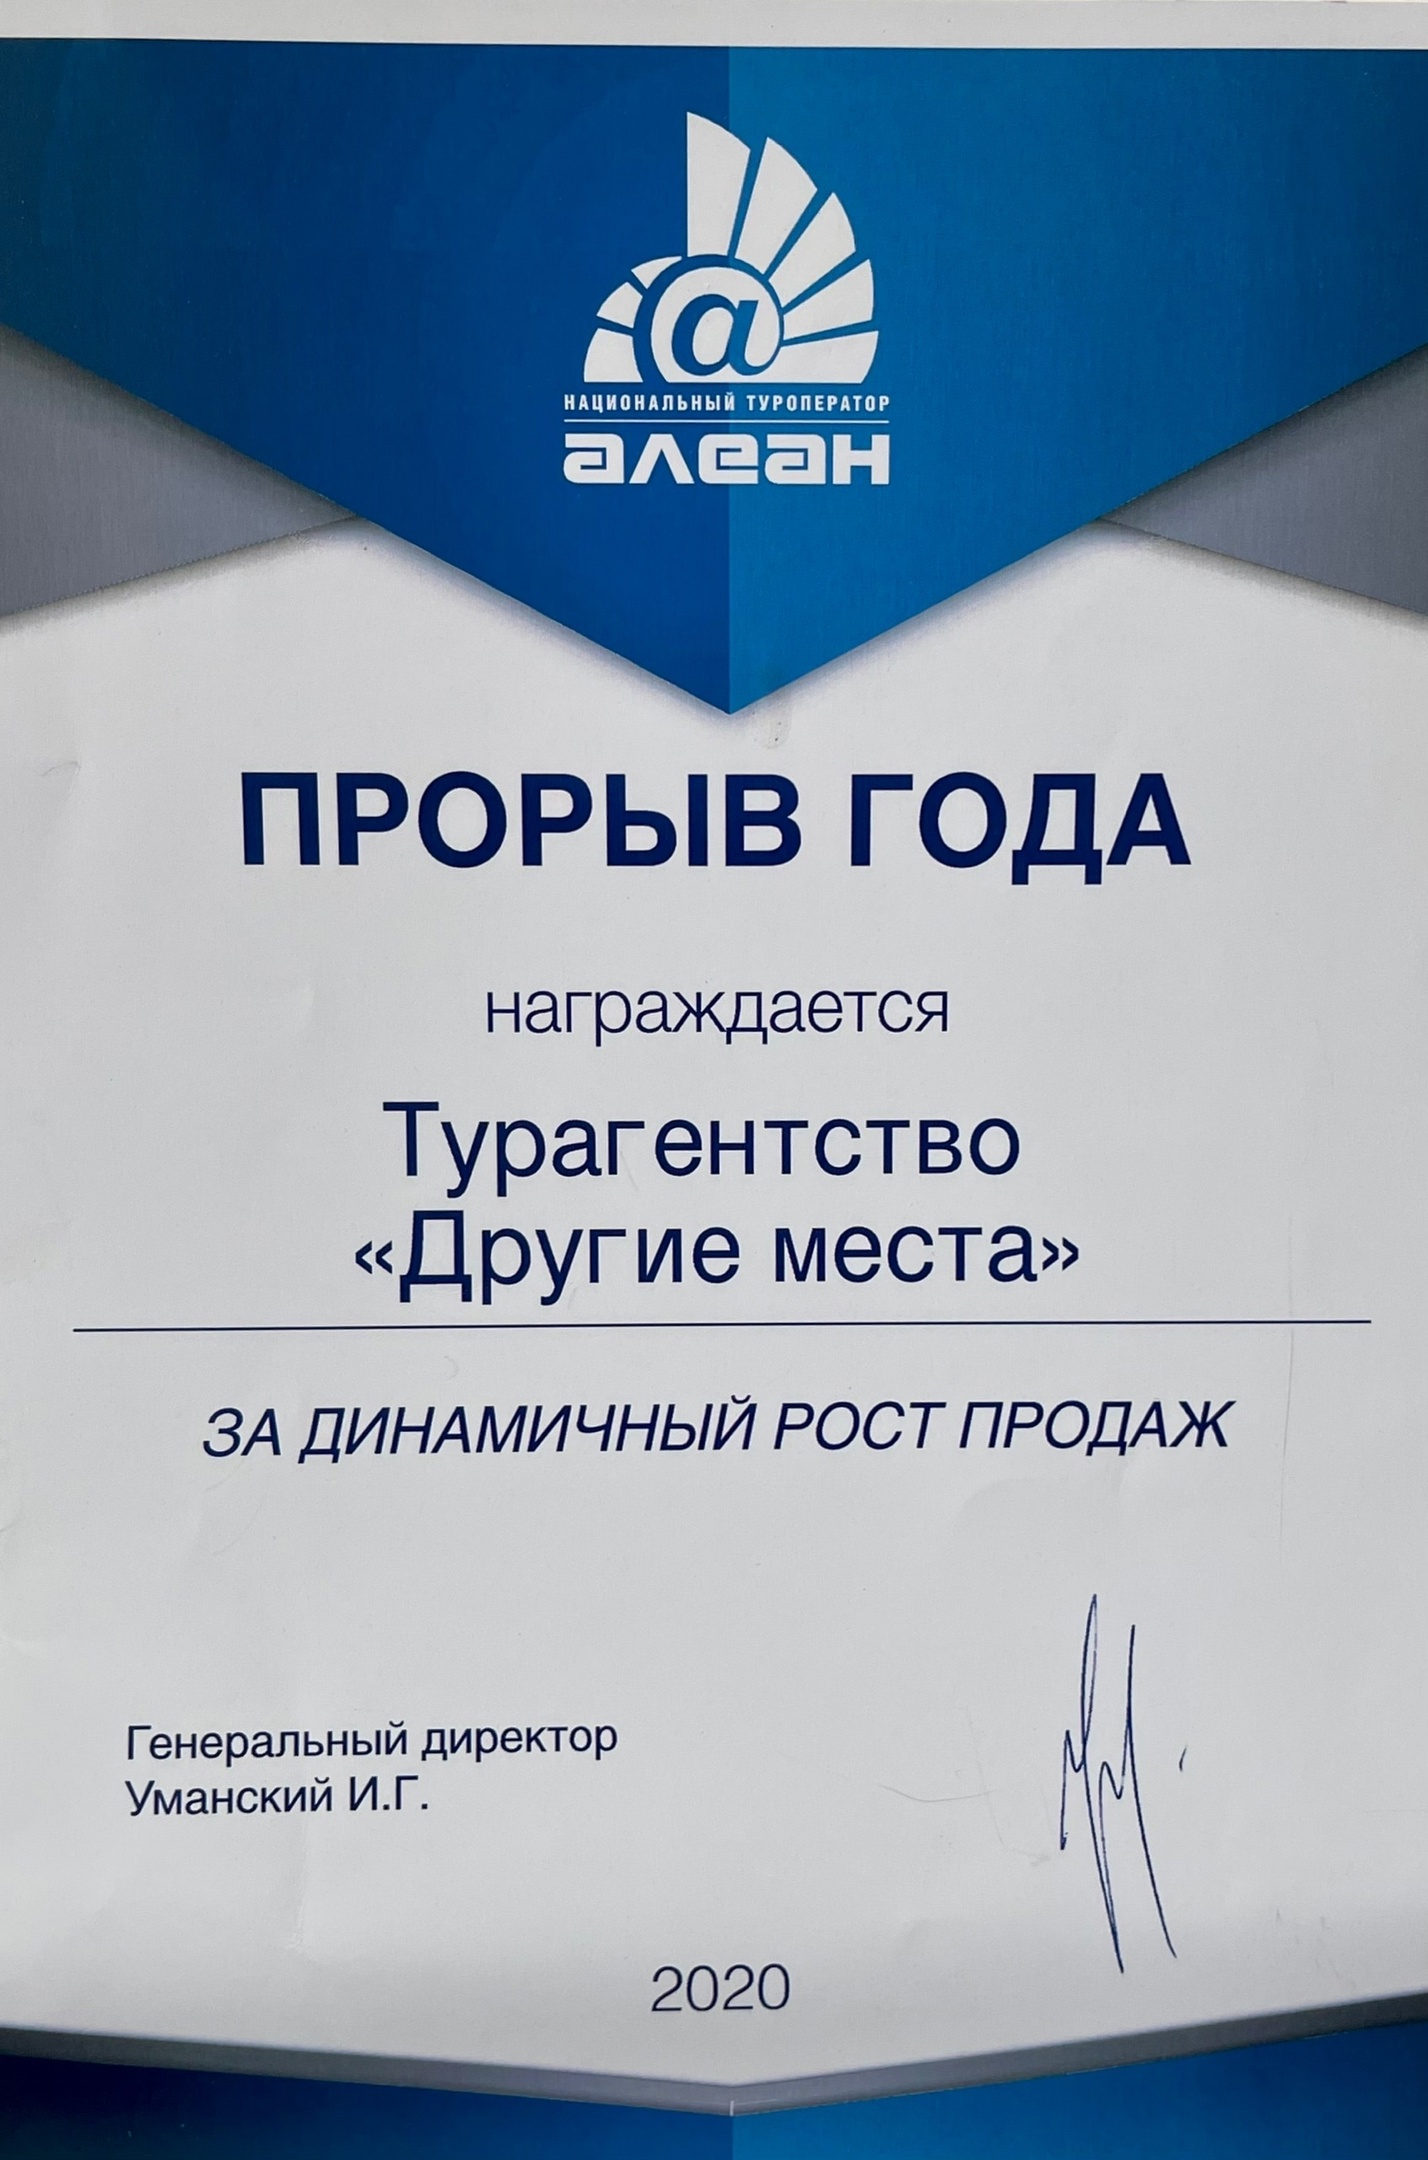 Сертификат "Алеан2020"